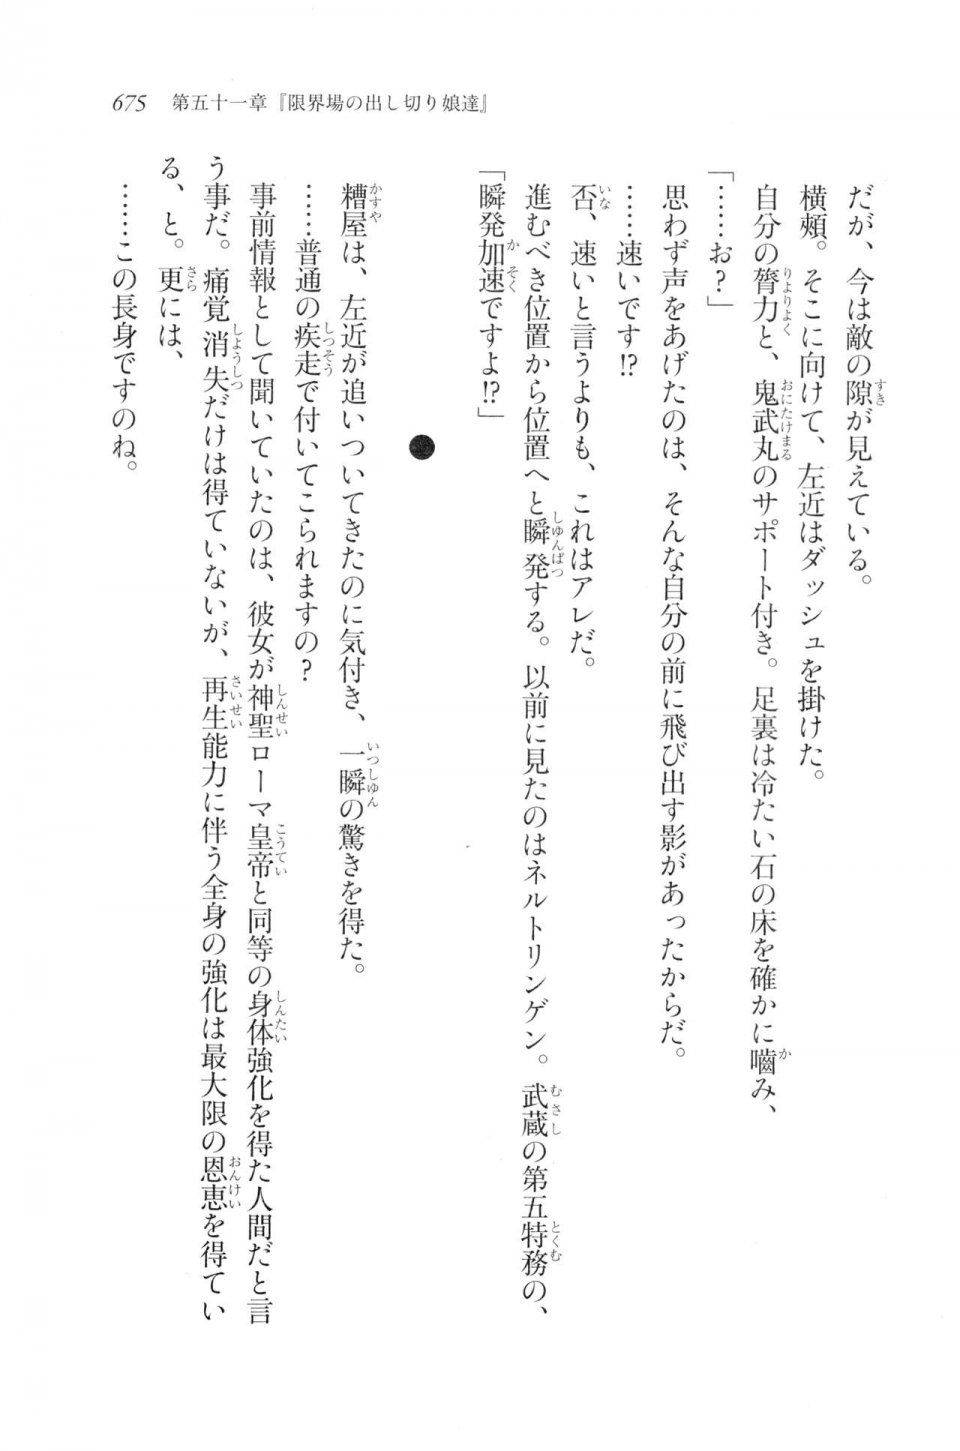 Kyoukai Senjou no Horizon LN Vol 20(8B) - Photo #675